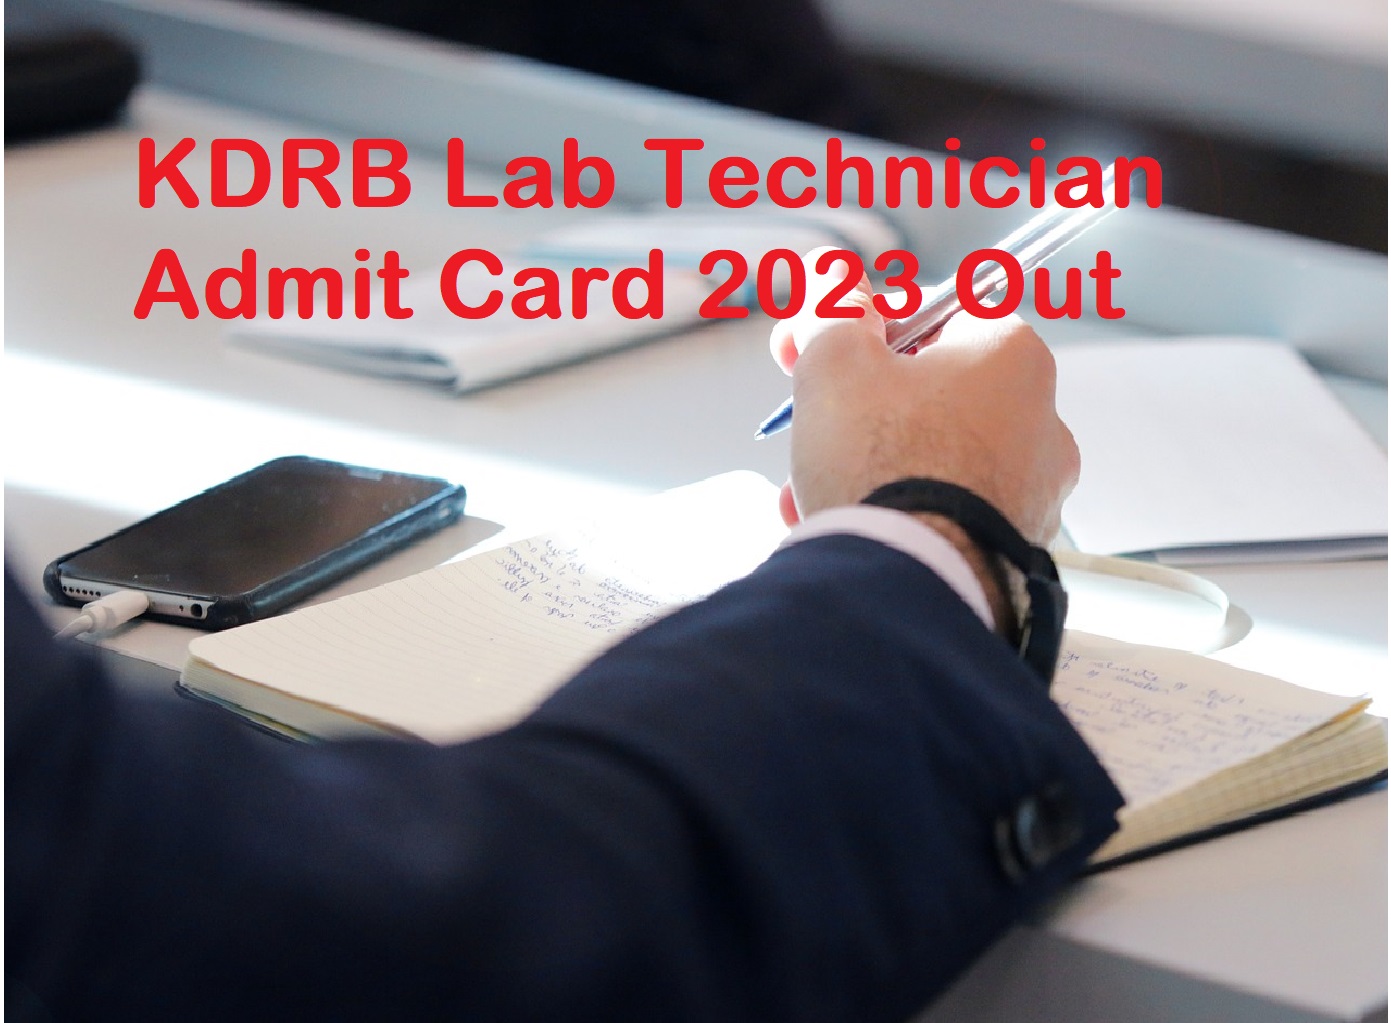 KDRB Lab Technician Admit Card